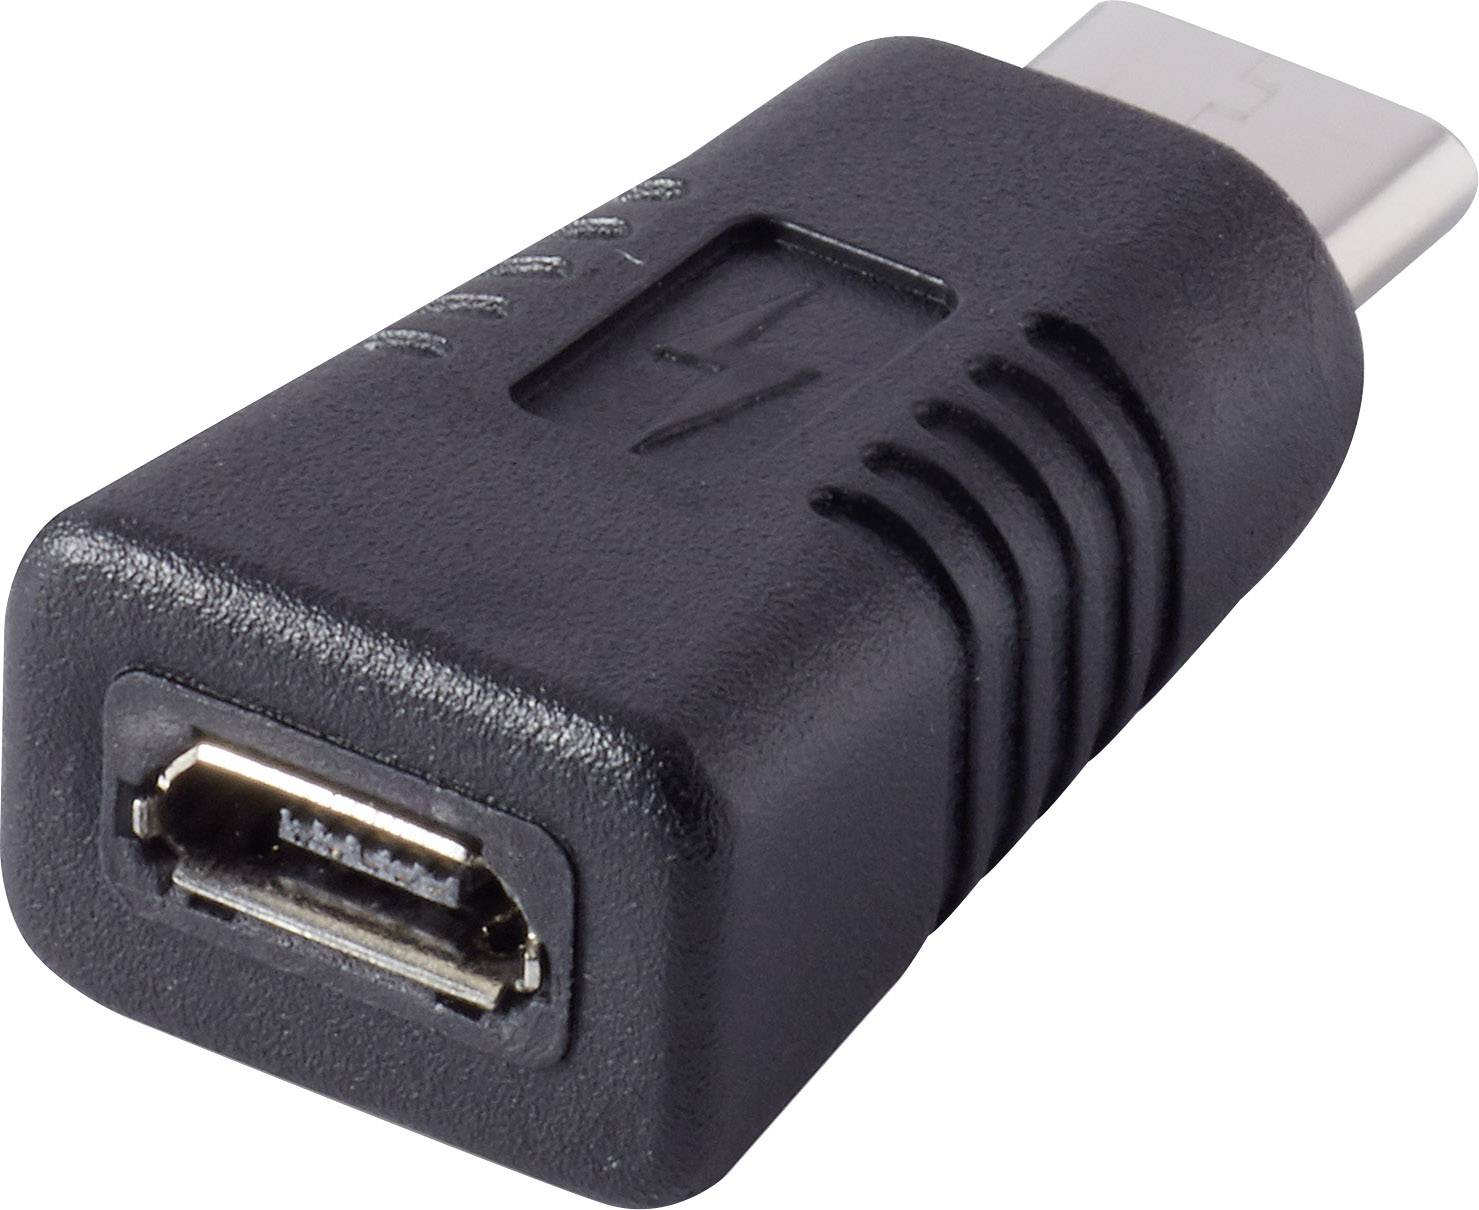 Renkforce USB 2.0 Adapter [1x USB-C® plug - 1x USB 2.0 port B] plated connectors | Conrad.com